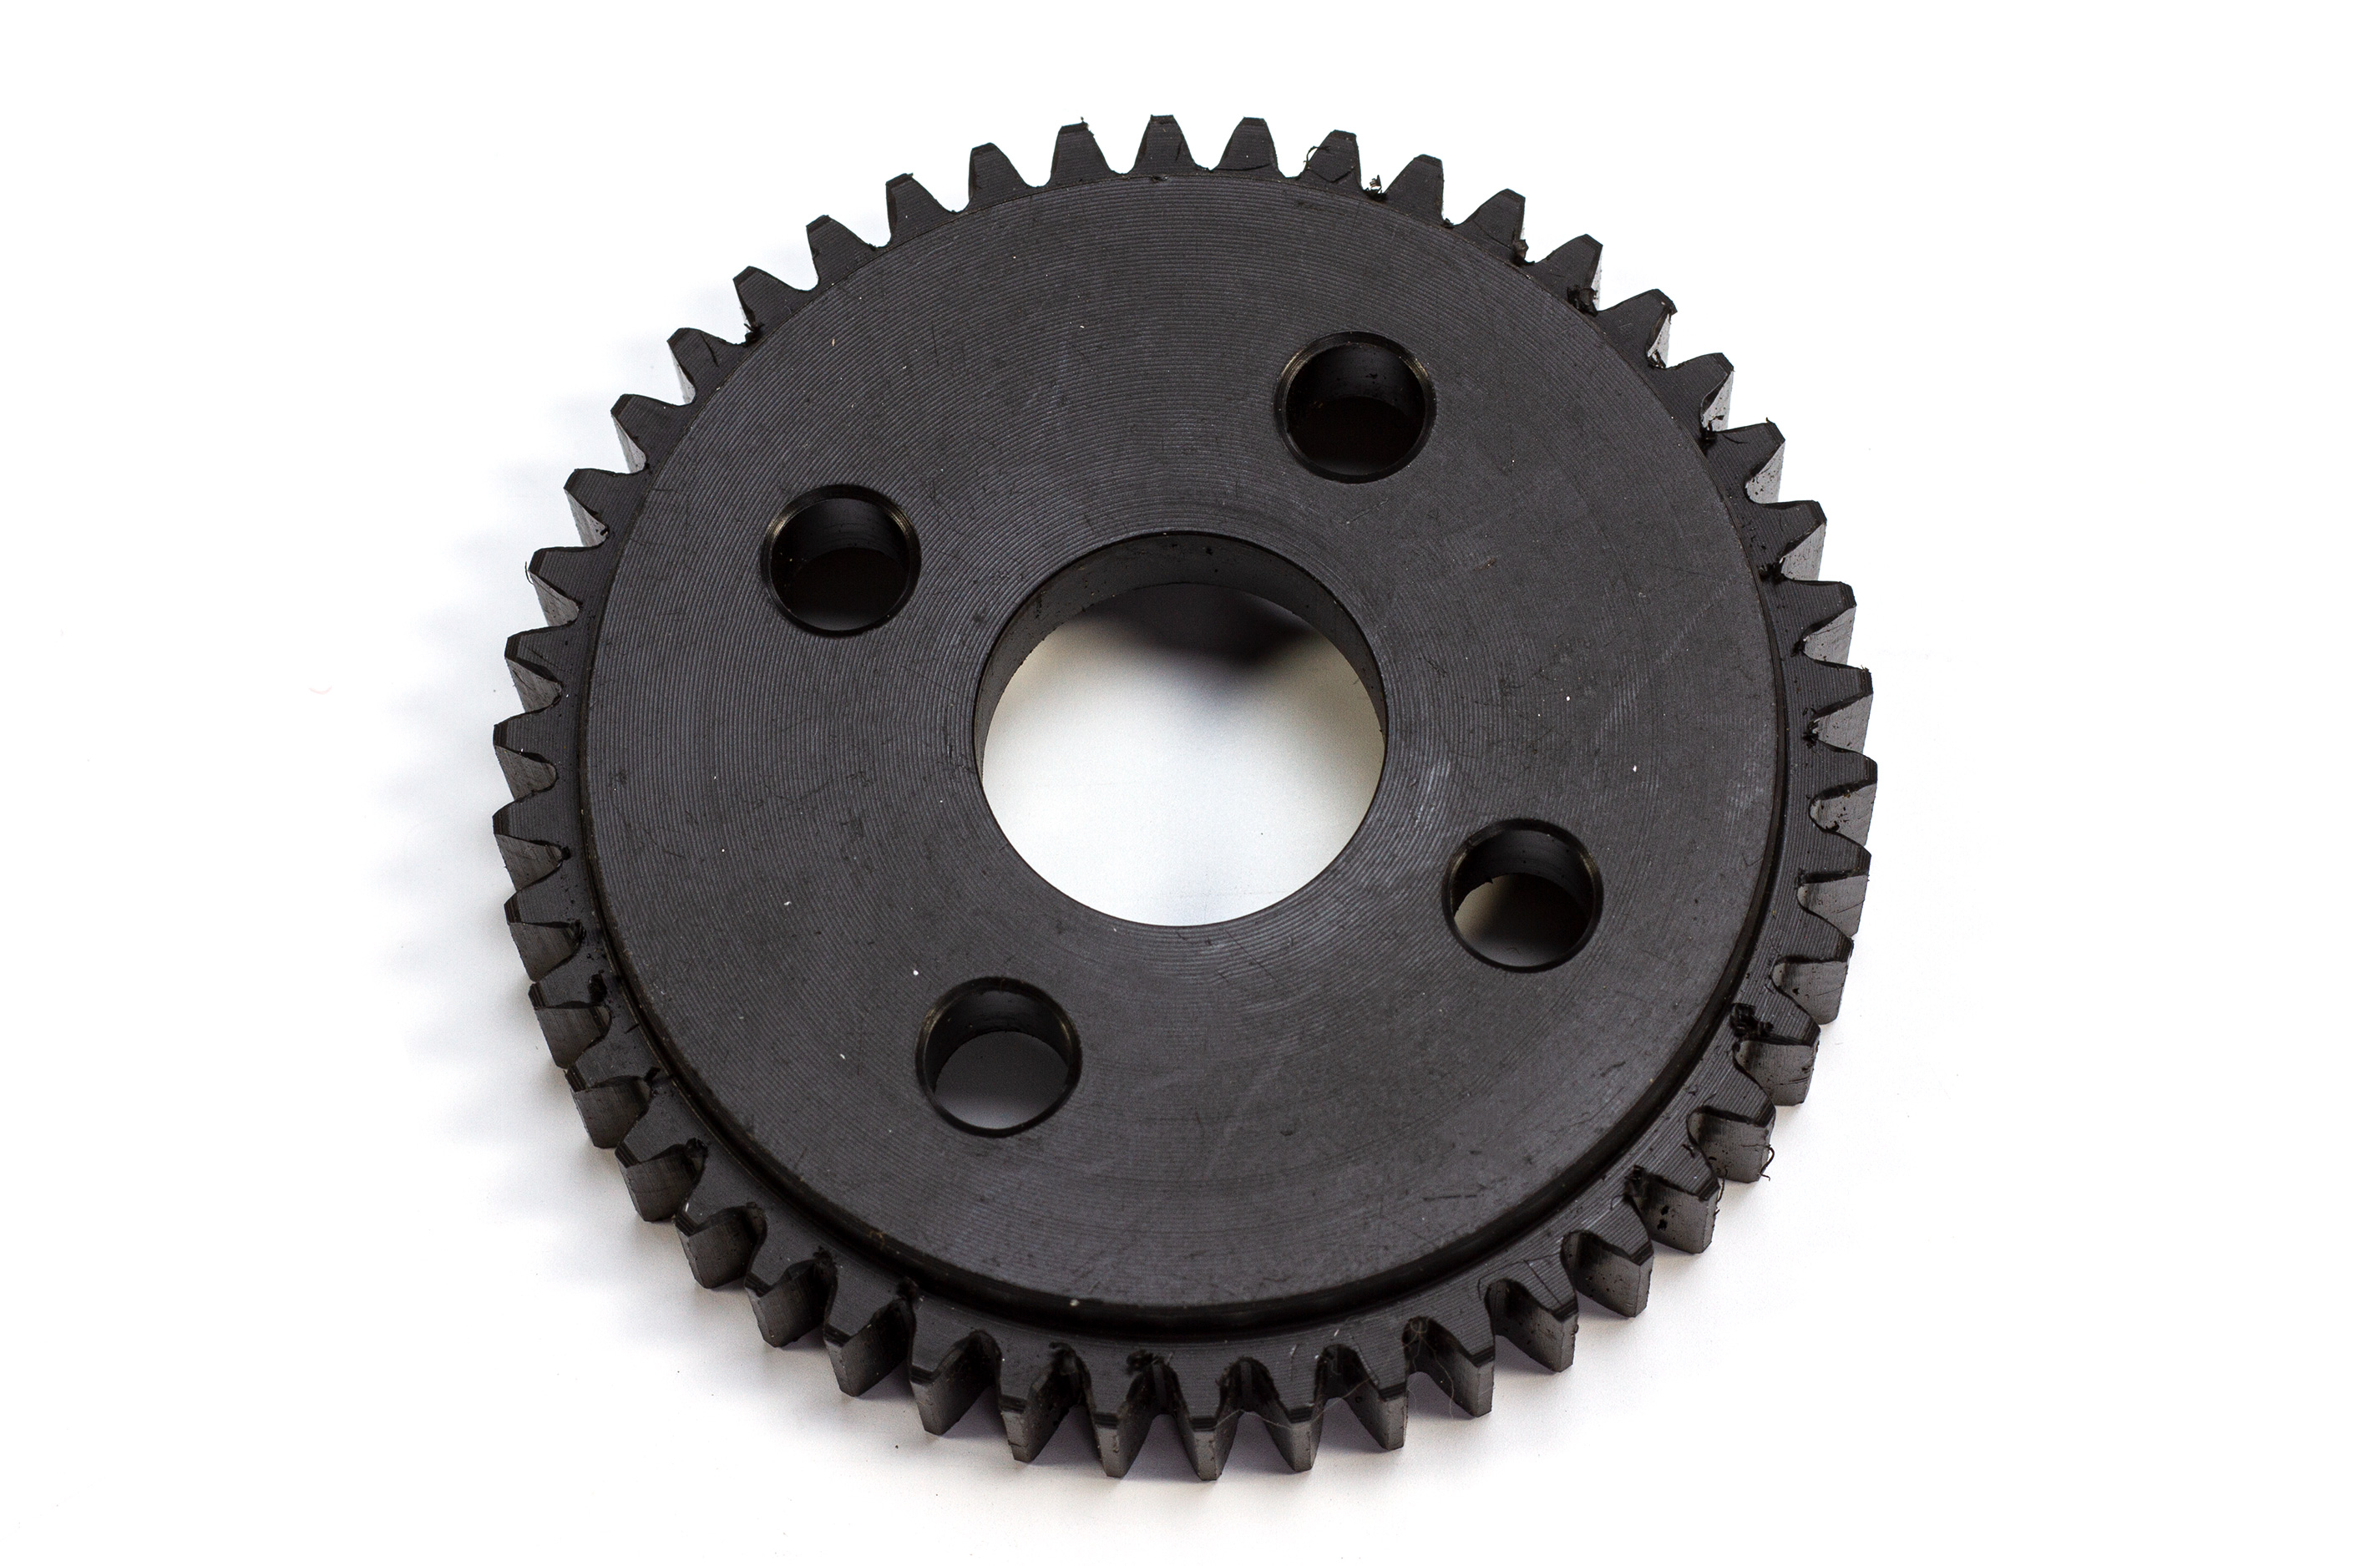 y6427/01 FG Plastic gear wheel 46 teeth 2-speed